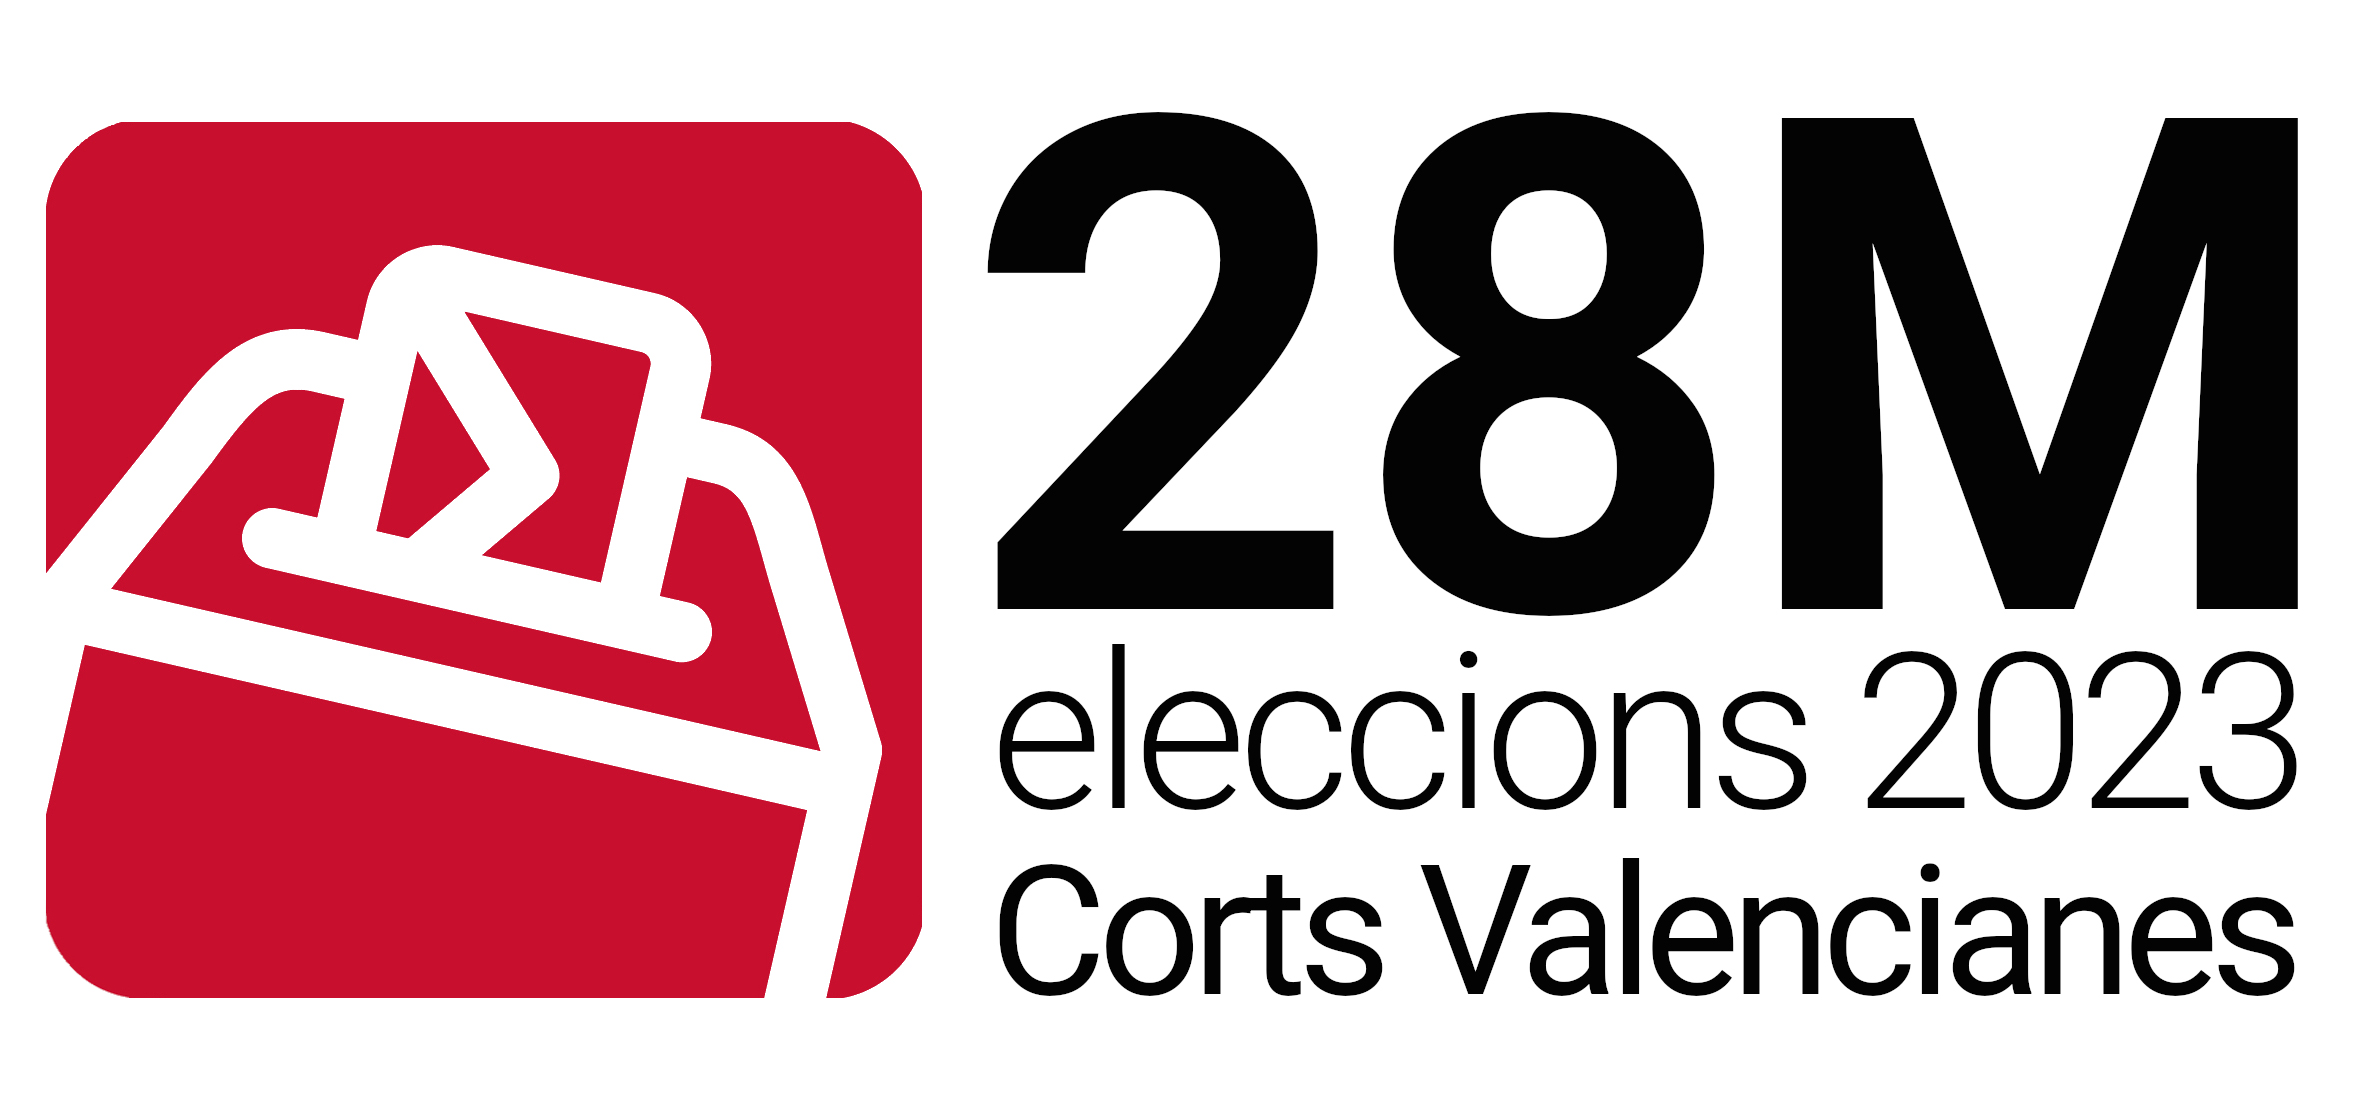 Eleccions Corts Valencianes 2023